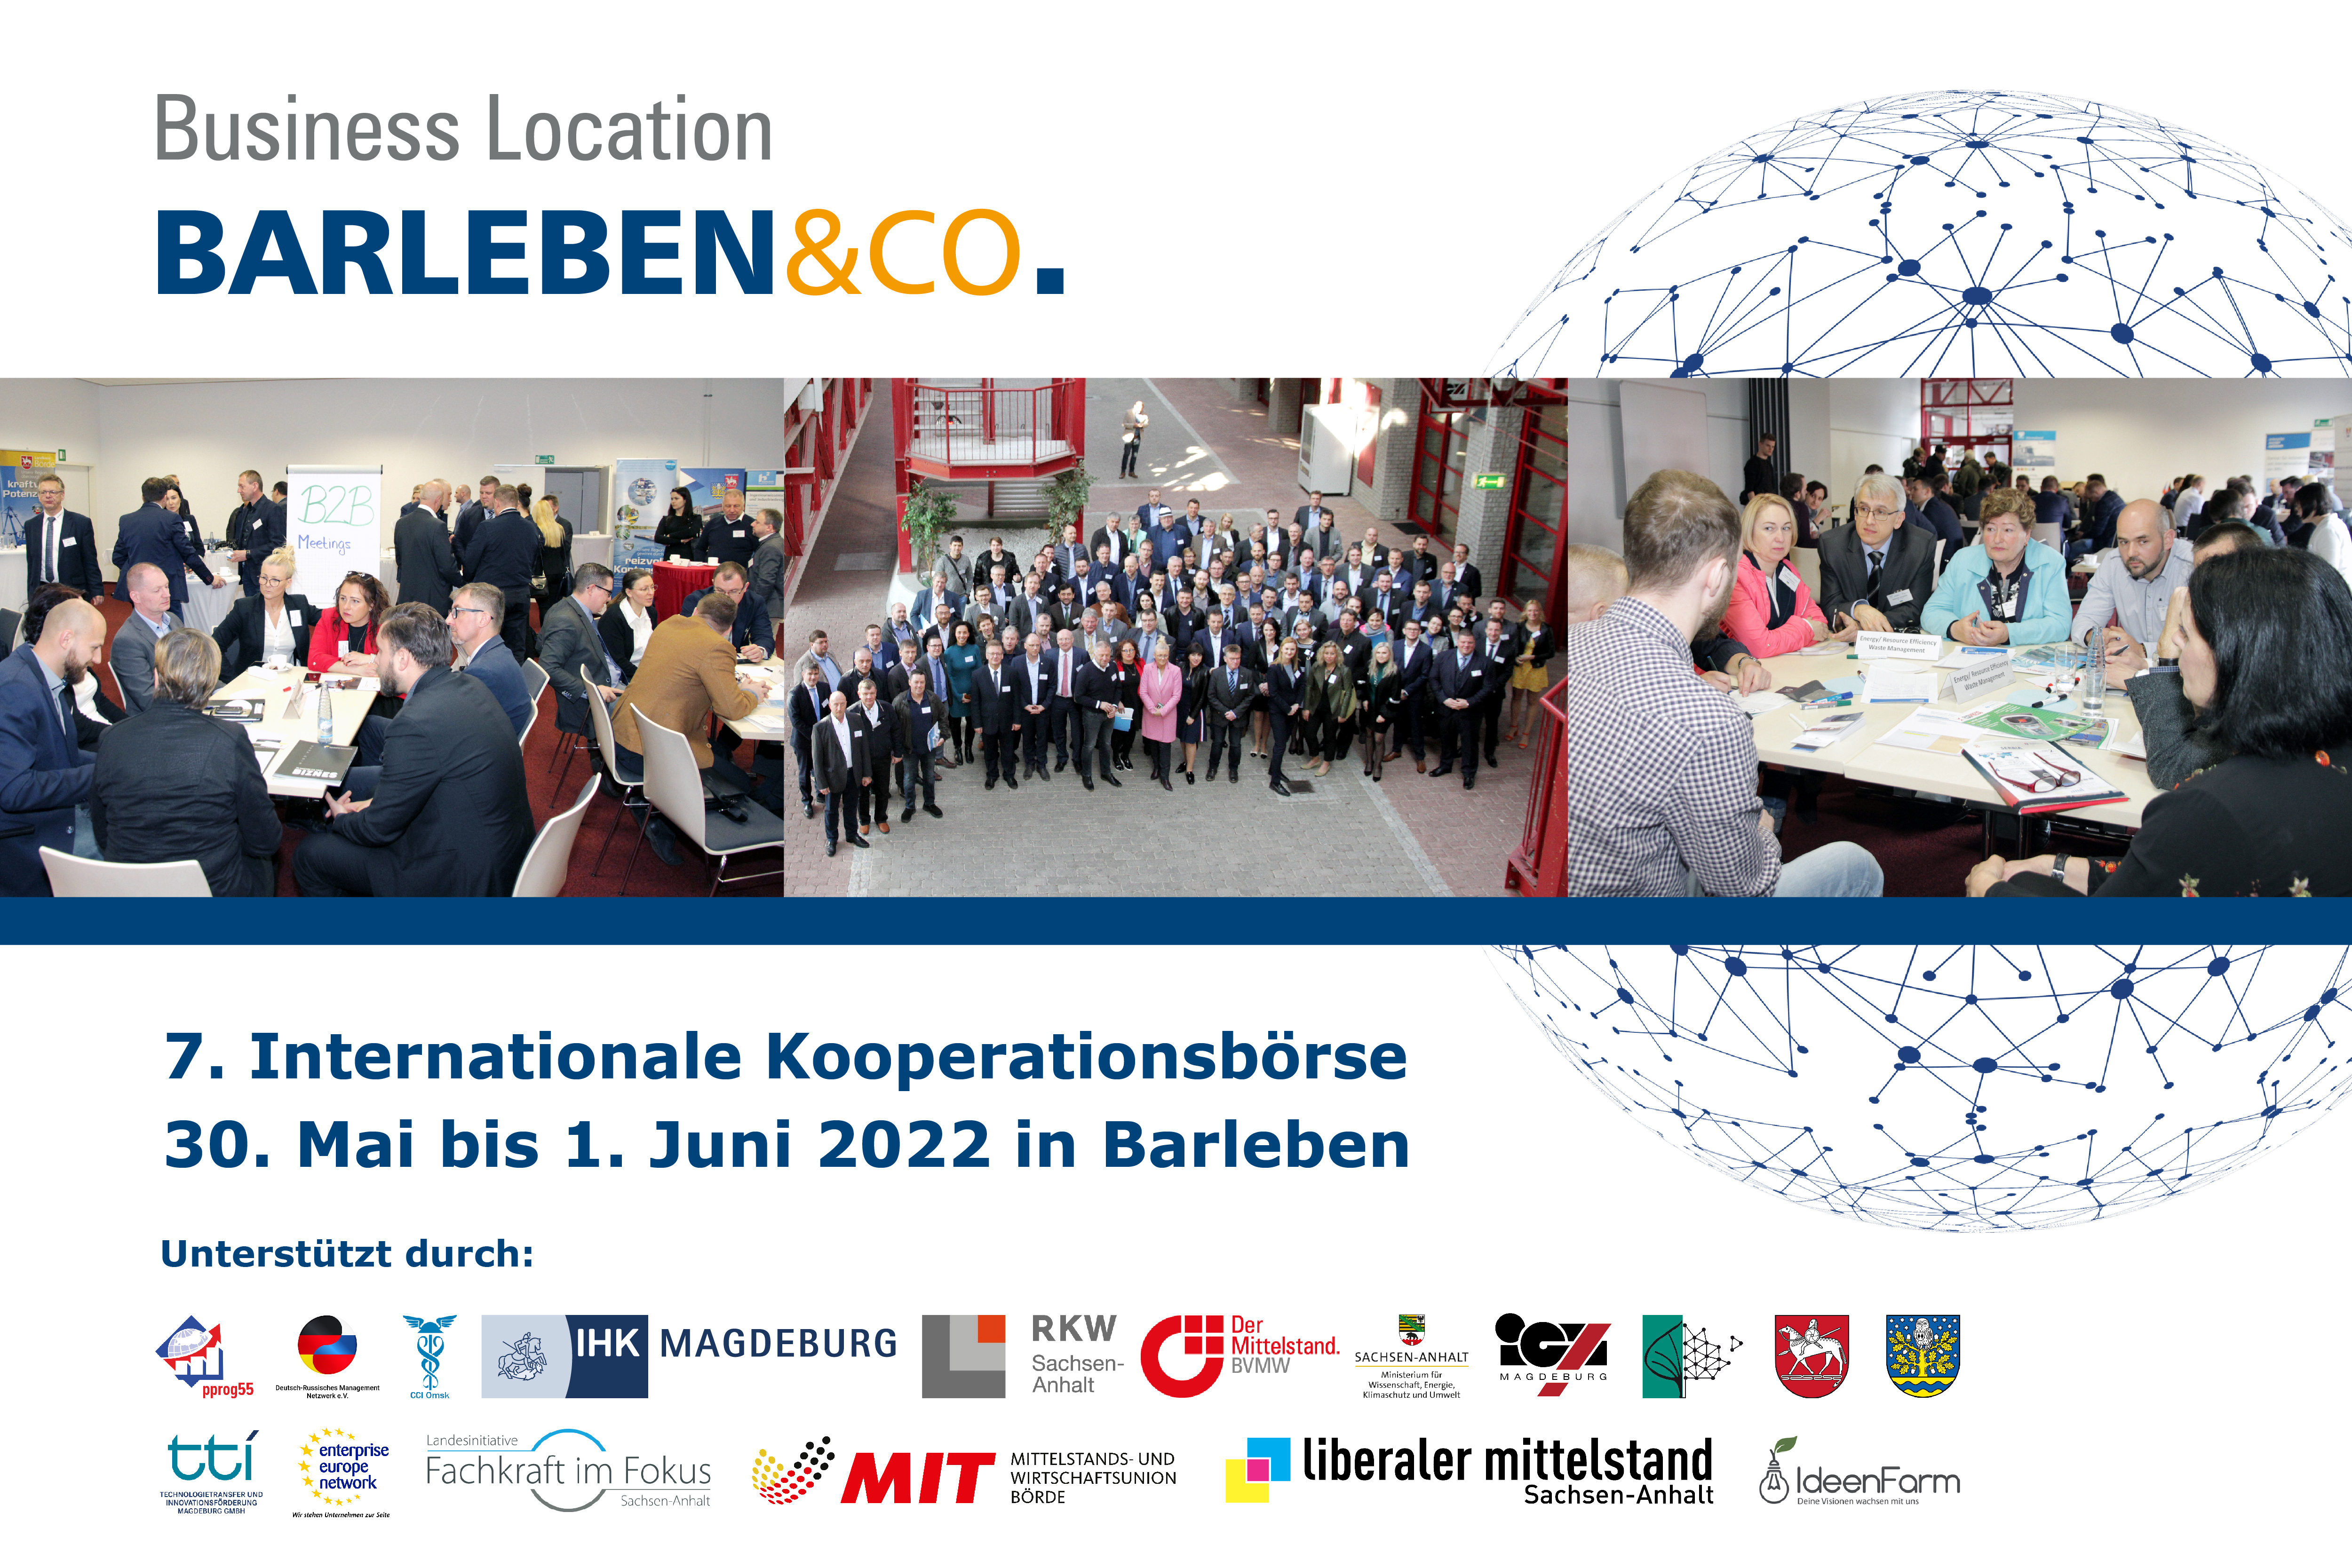 Interner Link: Zur Veranstaltung 7. Internationale Kooperationsbörse in Barleben